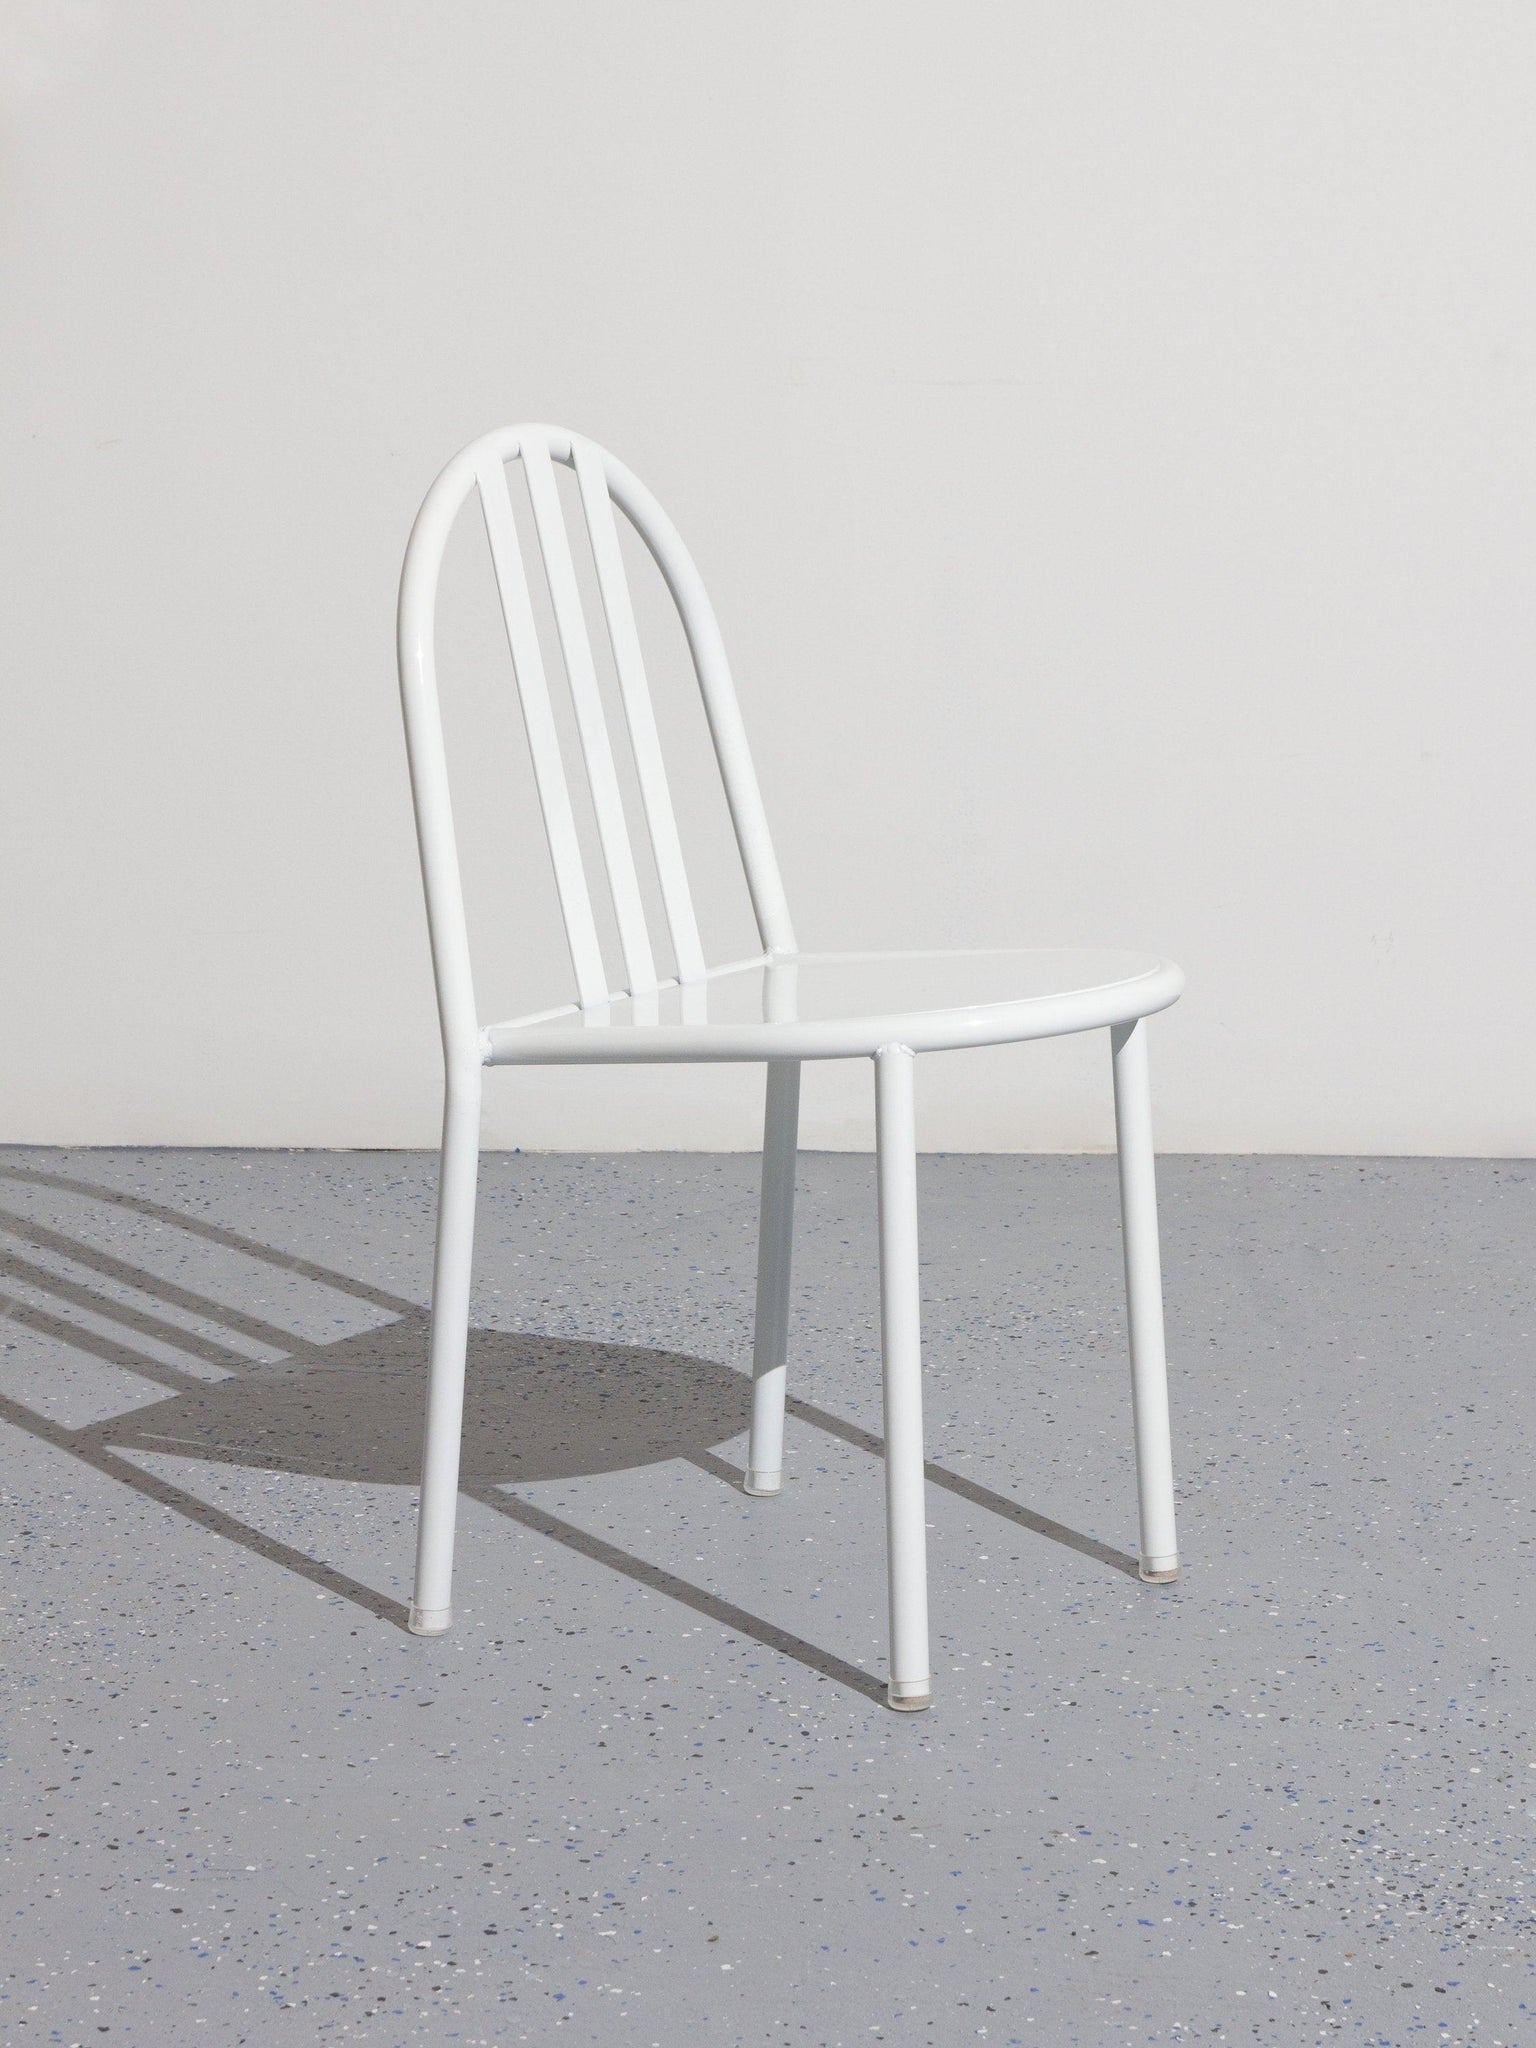 Model 222 Chair by Robert Mallet Stevens White Bi-Rite Studio